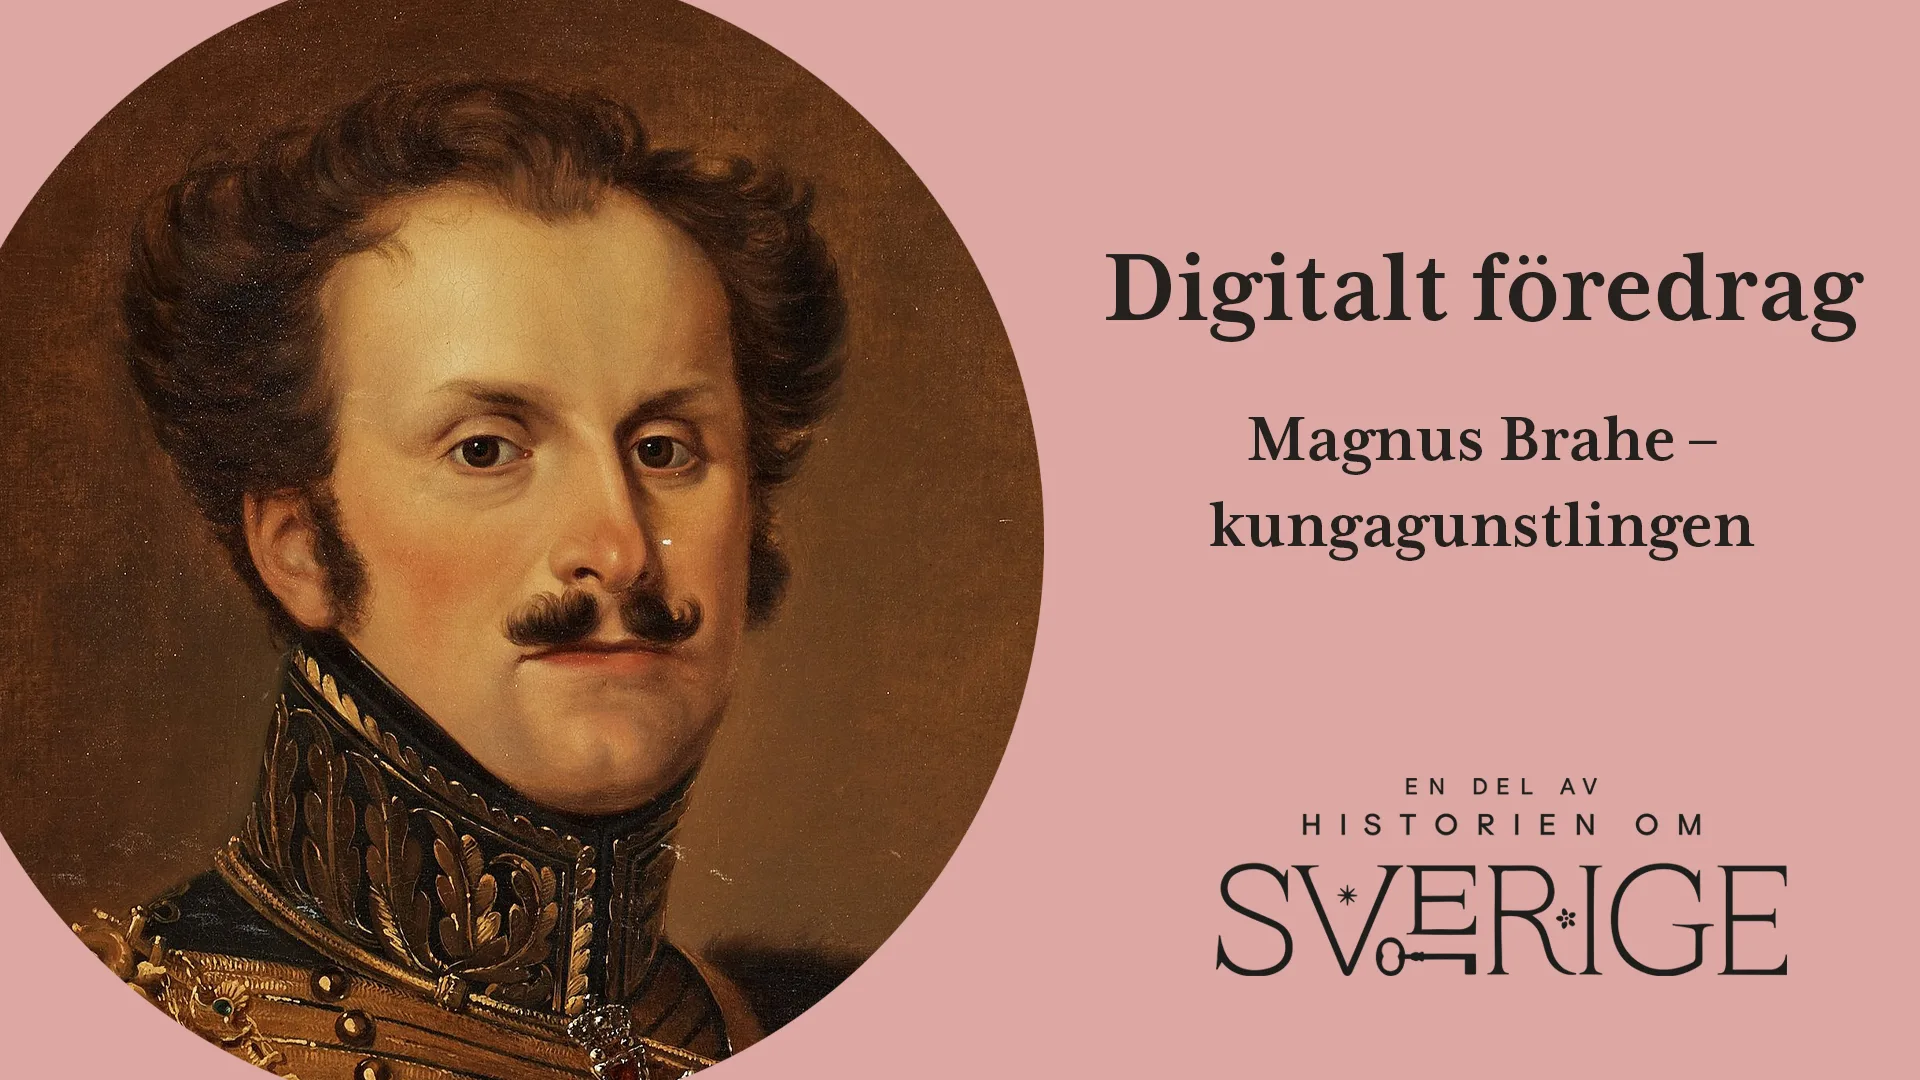 Porträtt på Magnus Brahe tillsammans med texten digitalt föredrag, en gång rikets främste greve - Erik Brahes uppgång och fall.